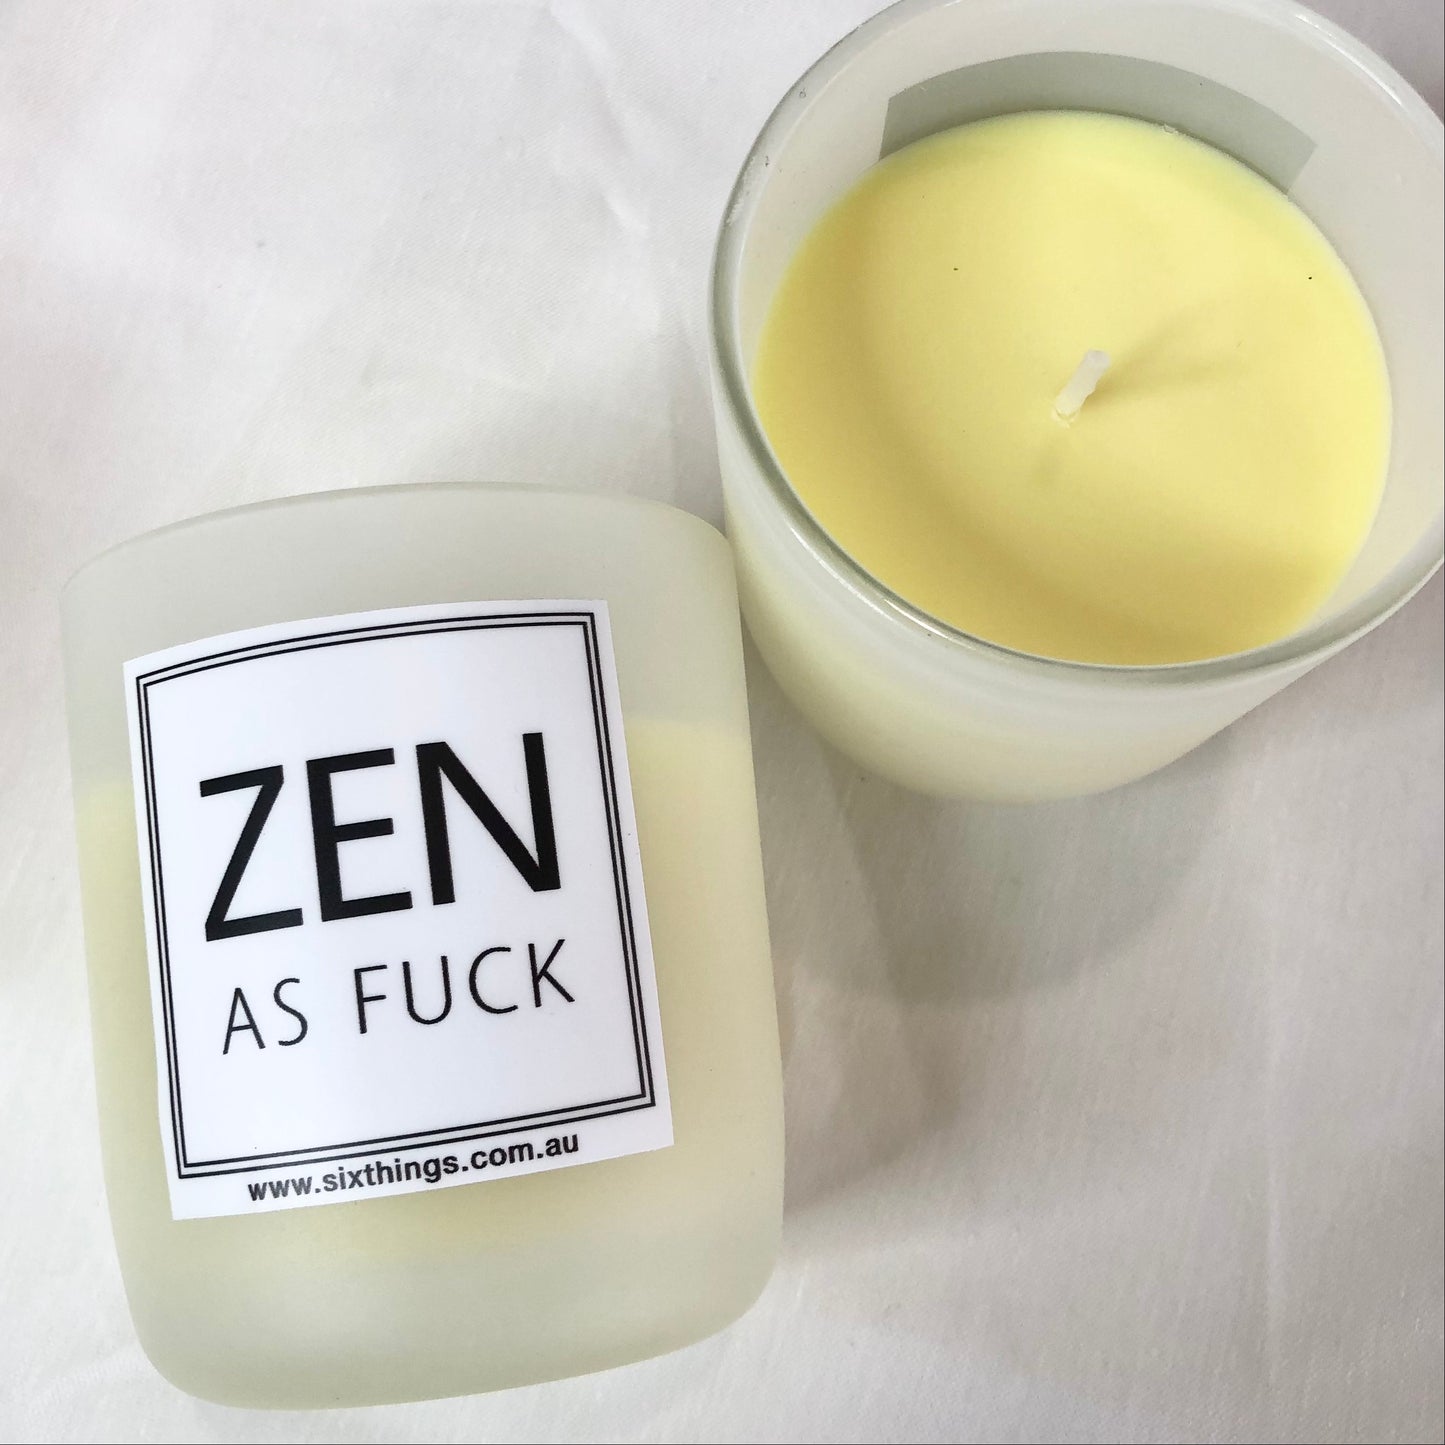 Zen as Fuck fun / abusive candle